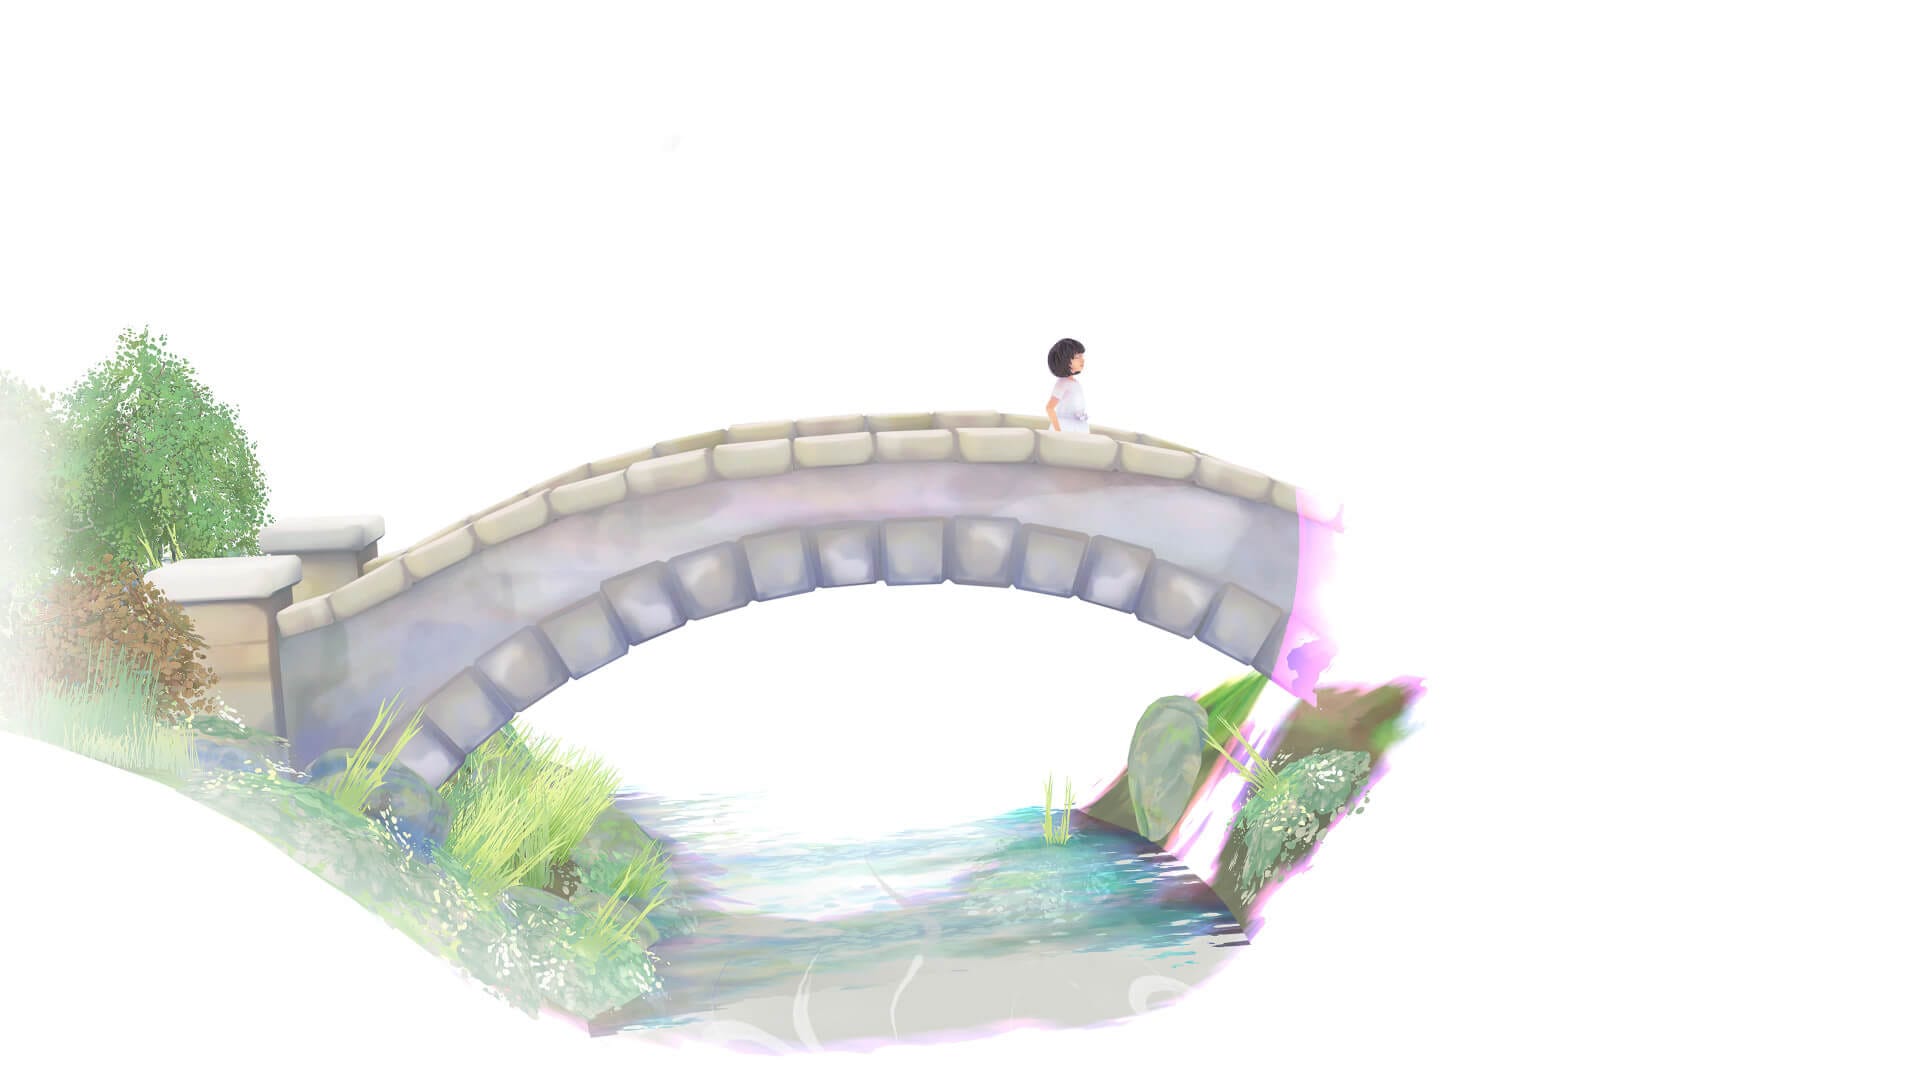 The protagonist of Beyond Eyes walking across a bridge